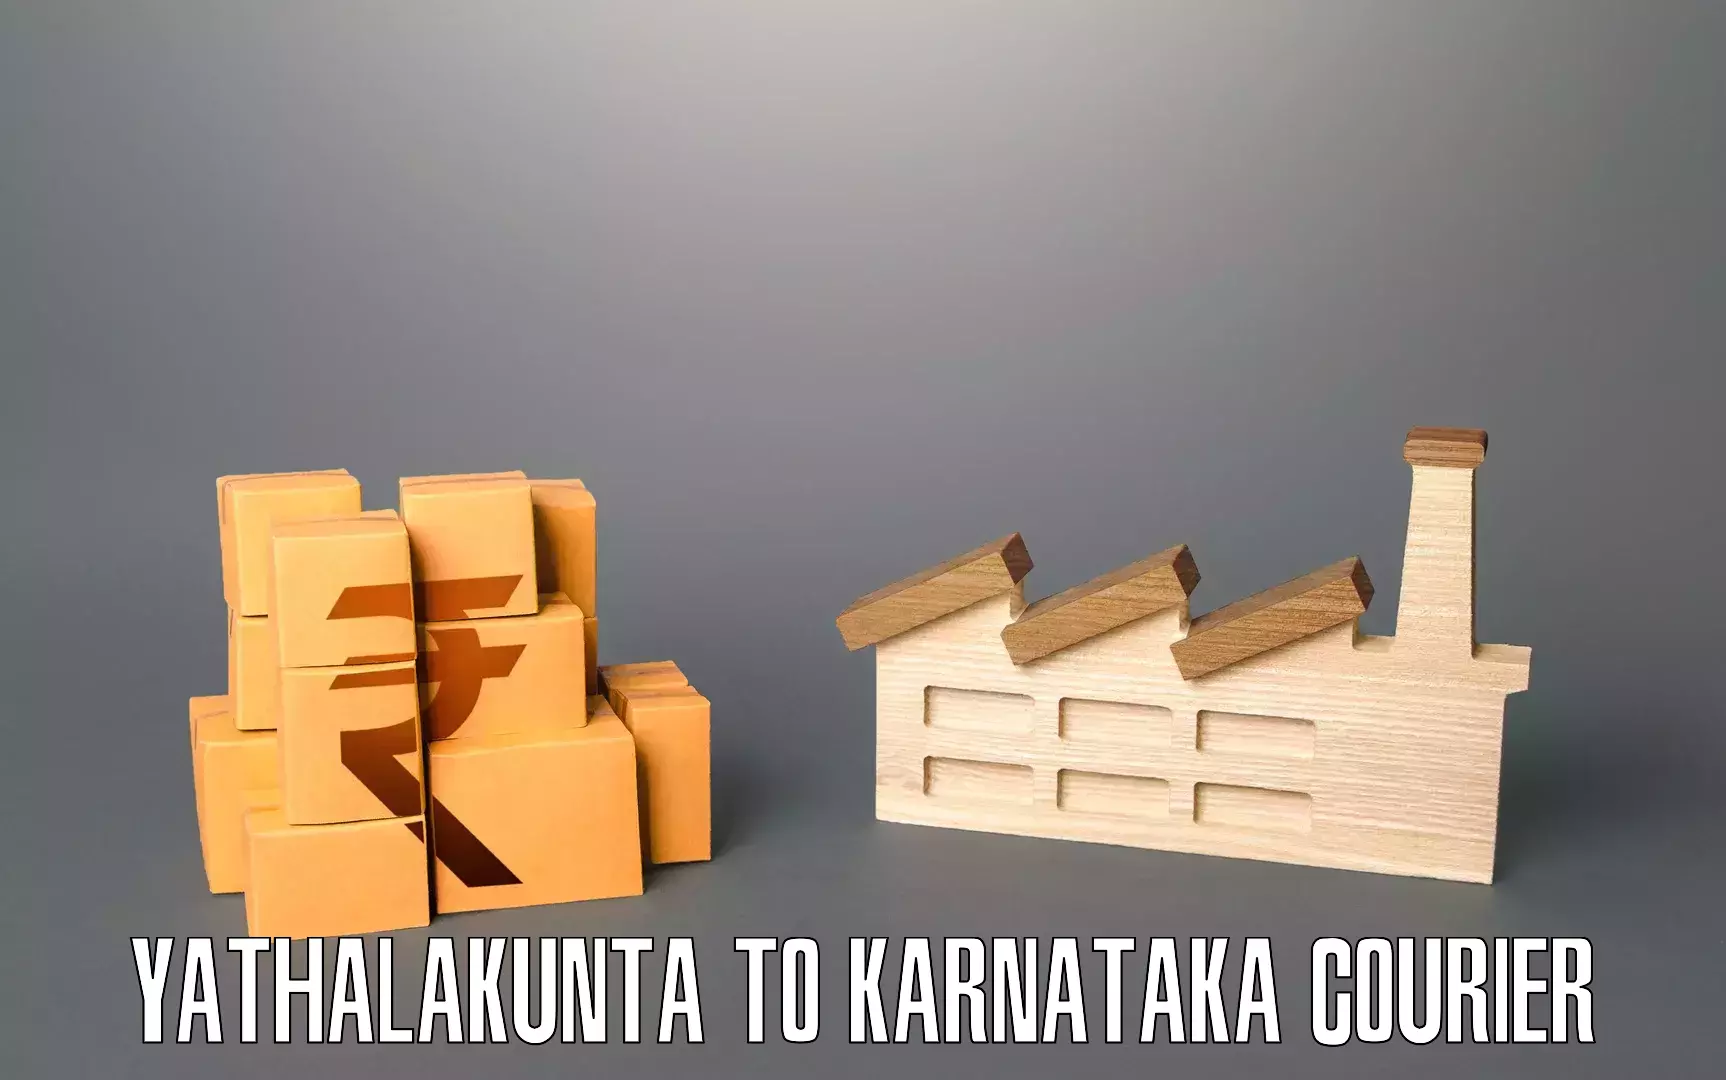 Furniture shipping services Yathalakunta to Kulshekar